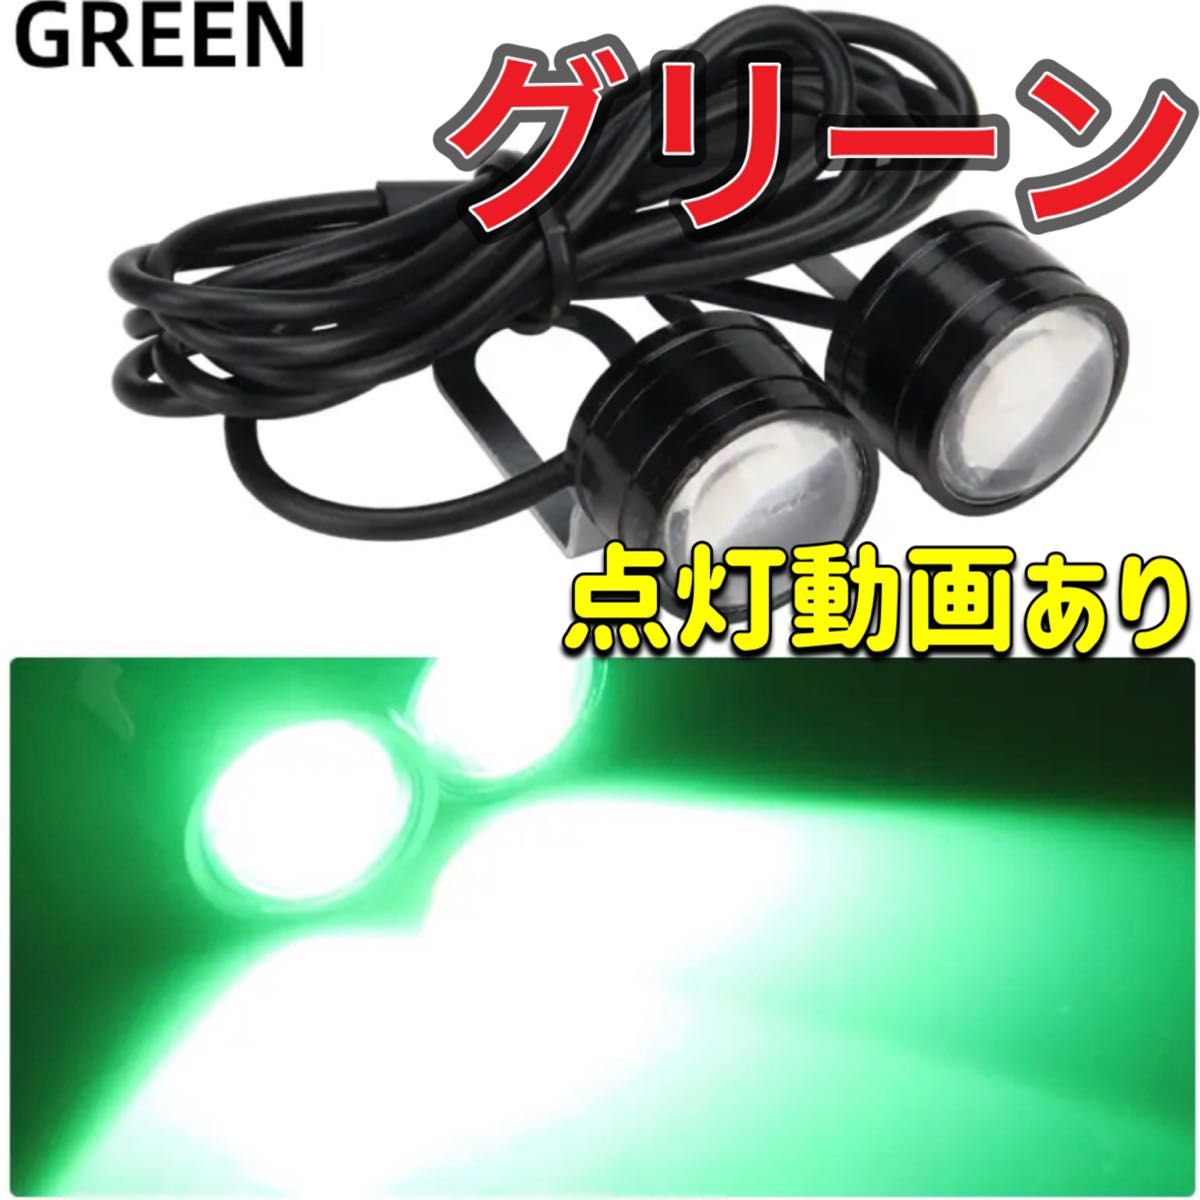 グリーン ストロボライト バイク フラッシュ 自動車 LED 蛍ランプ 暴走ランプ ナンバー灯